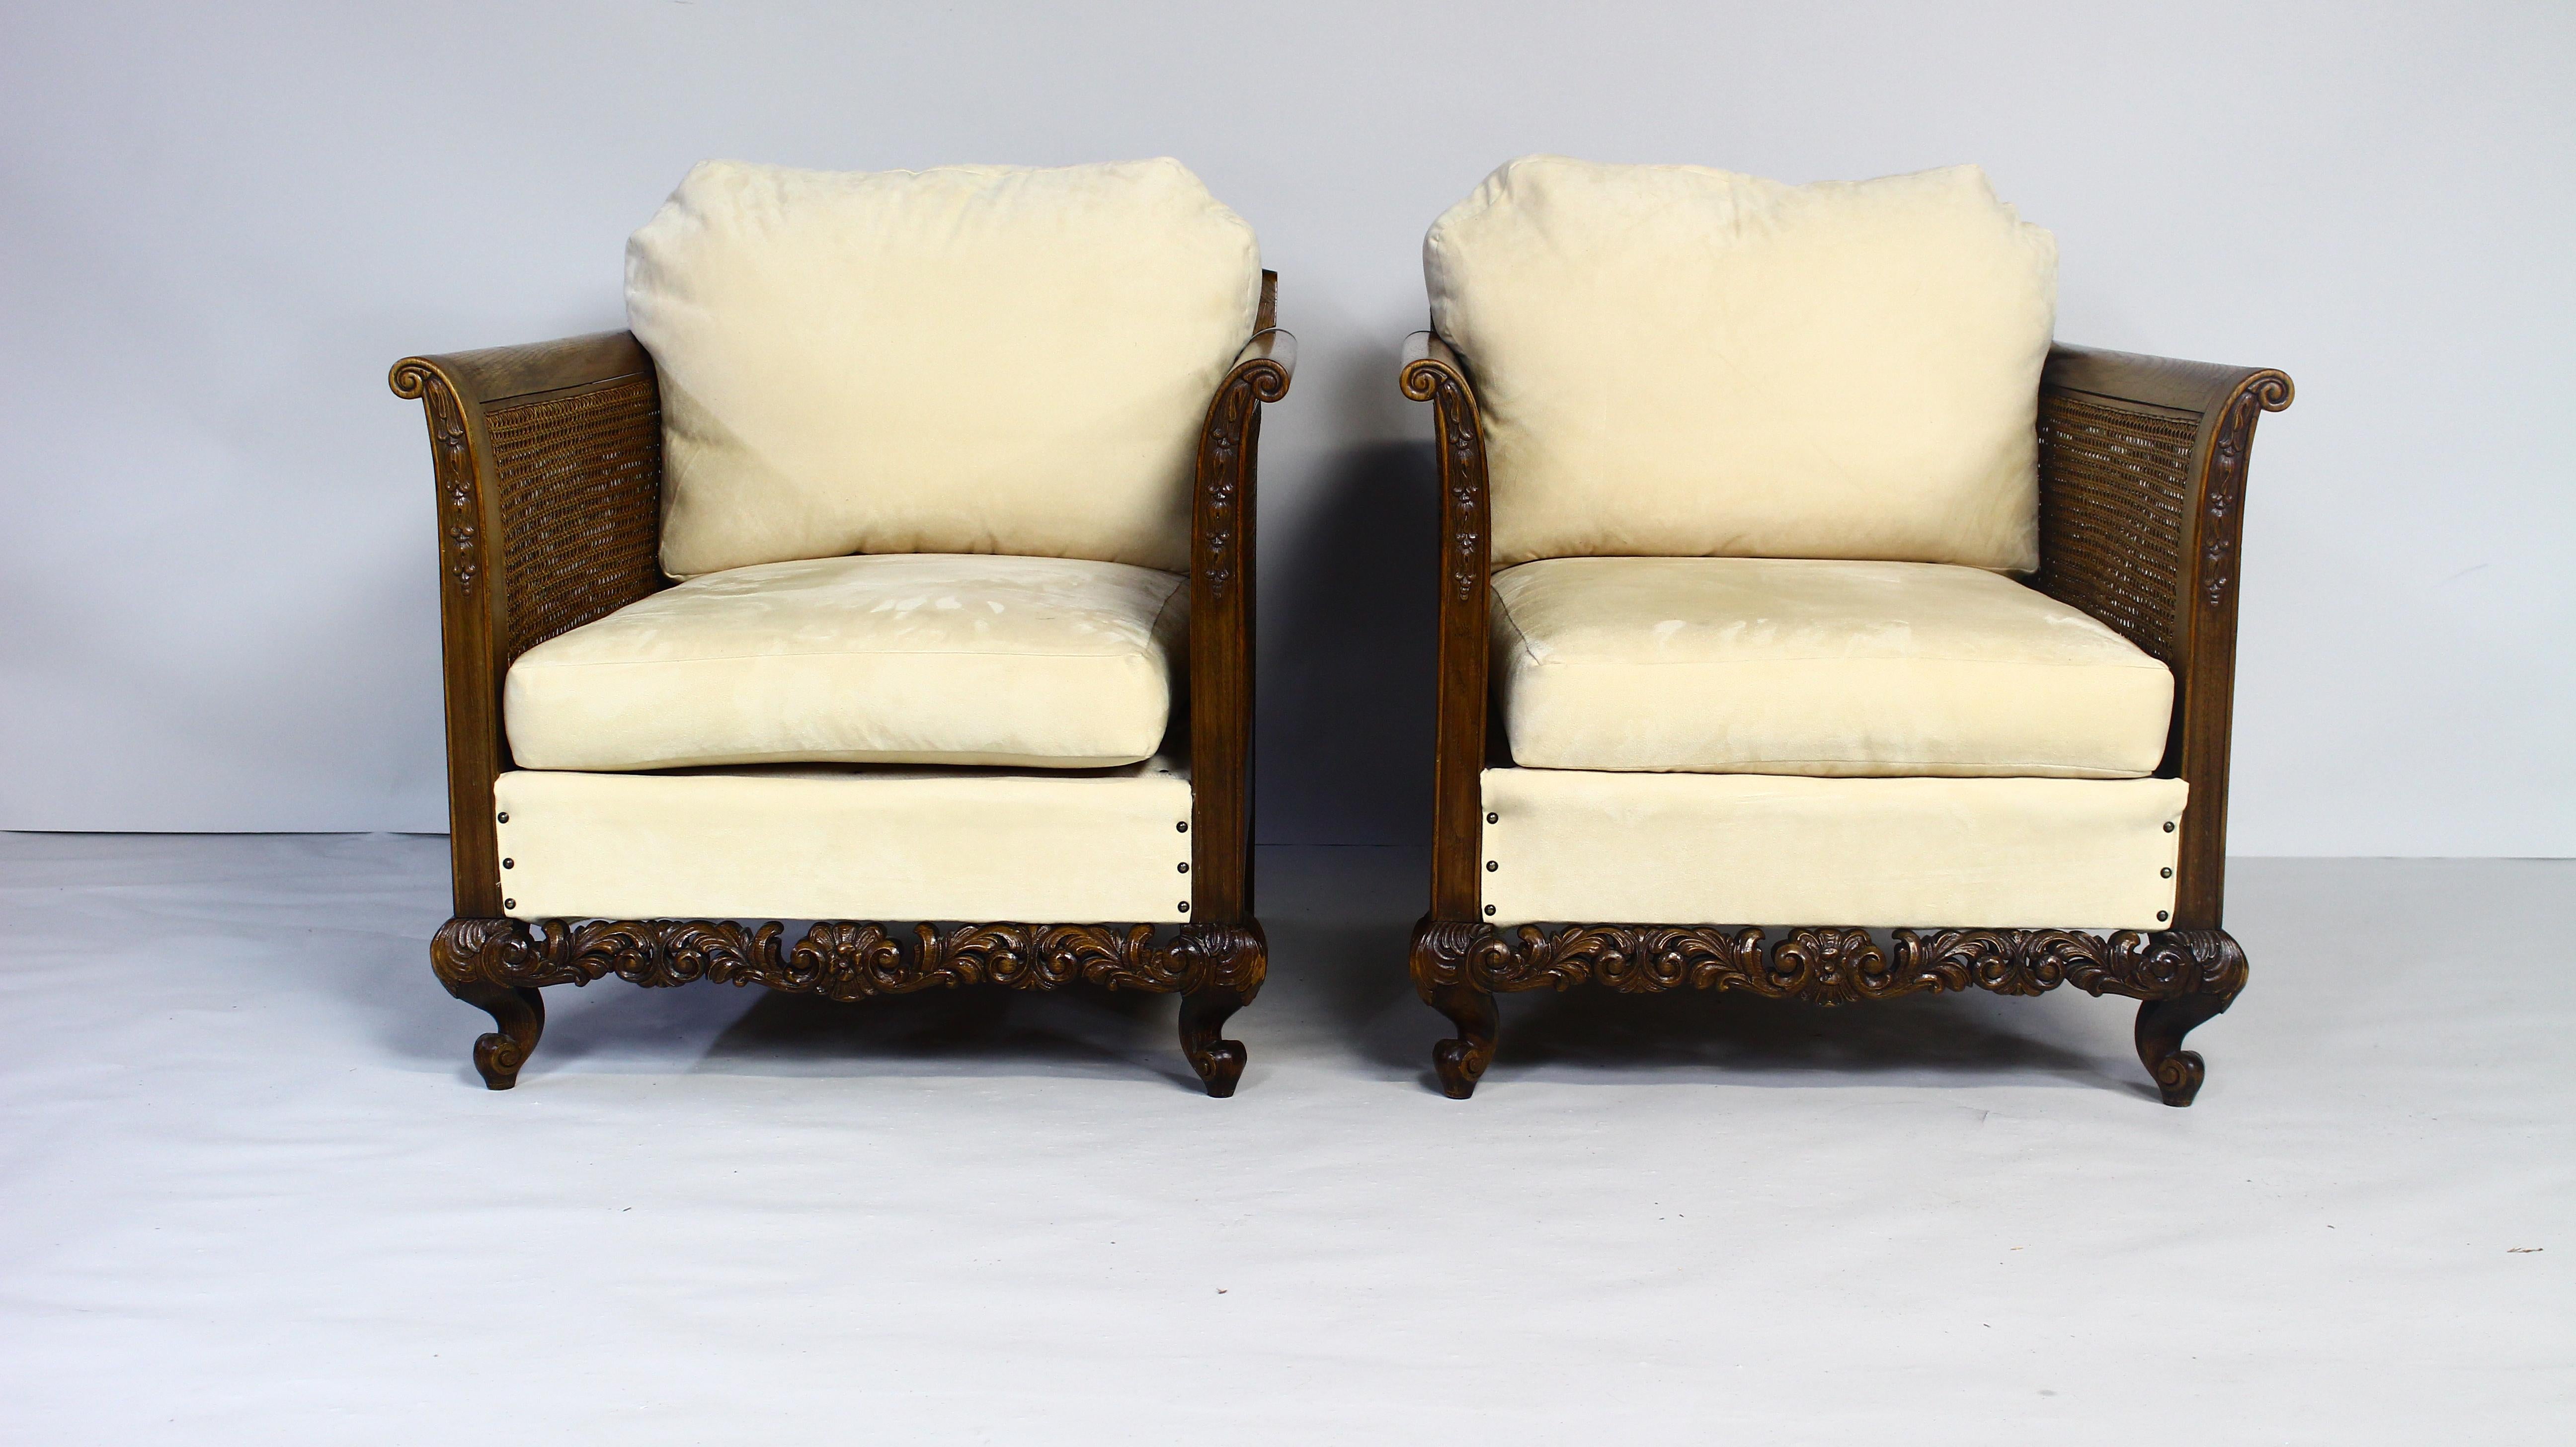 Cette paire de chaises de salon en rotin très décorative du début des années 1900 présente des formes magnifiques et des proportions généreuses.
Richement décoré, côtés et dos en rotin en très bon état.
Assise modifiée, coussins